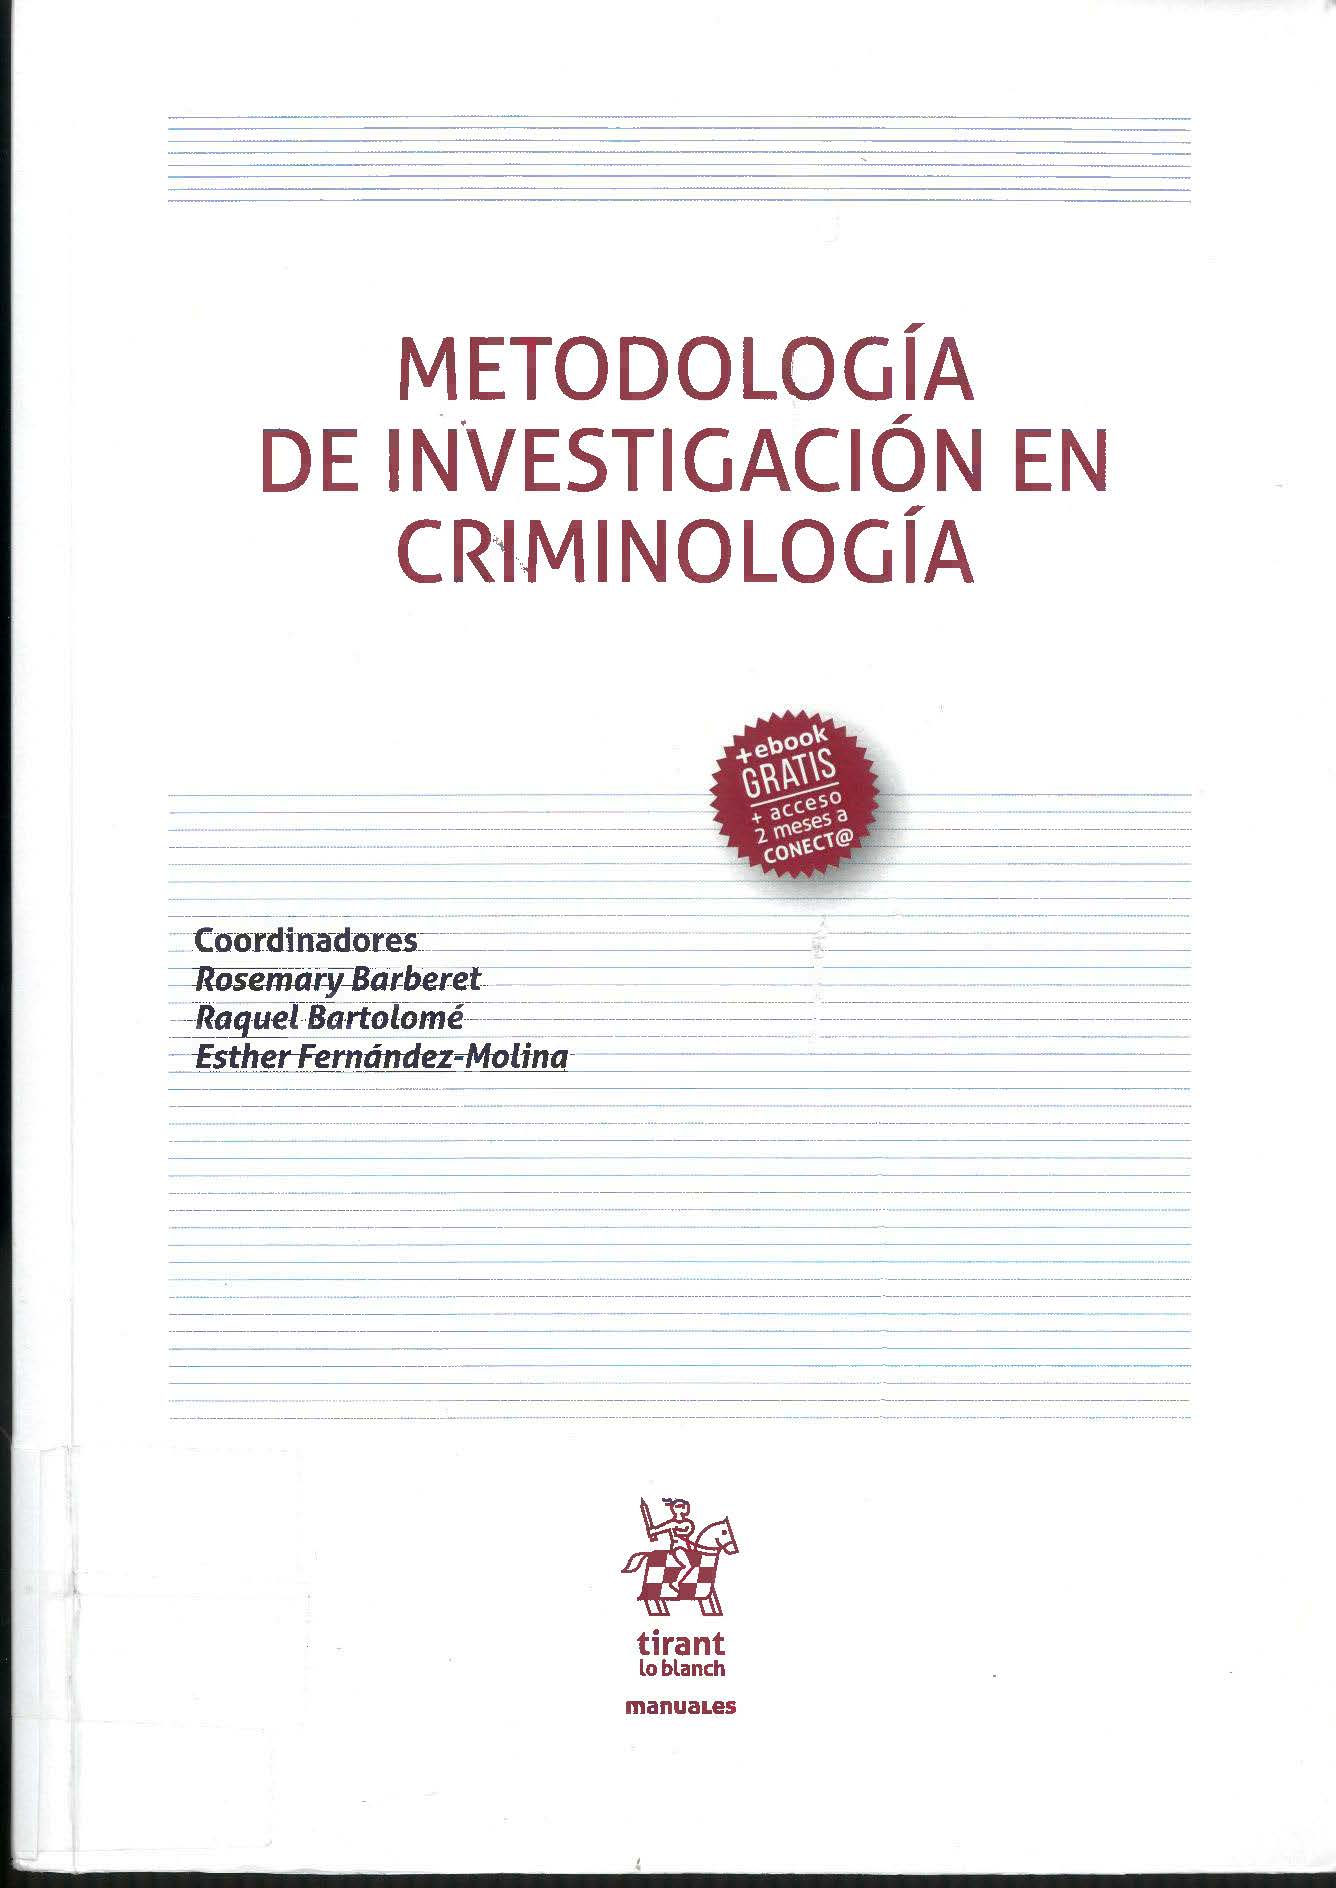 Imagen de portada del libro Metodología de investigación en criminología